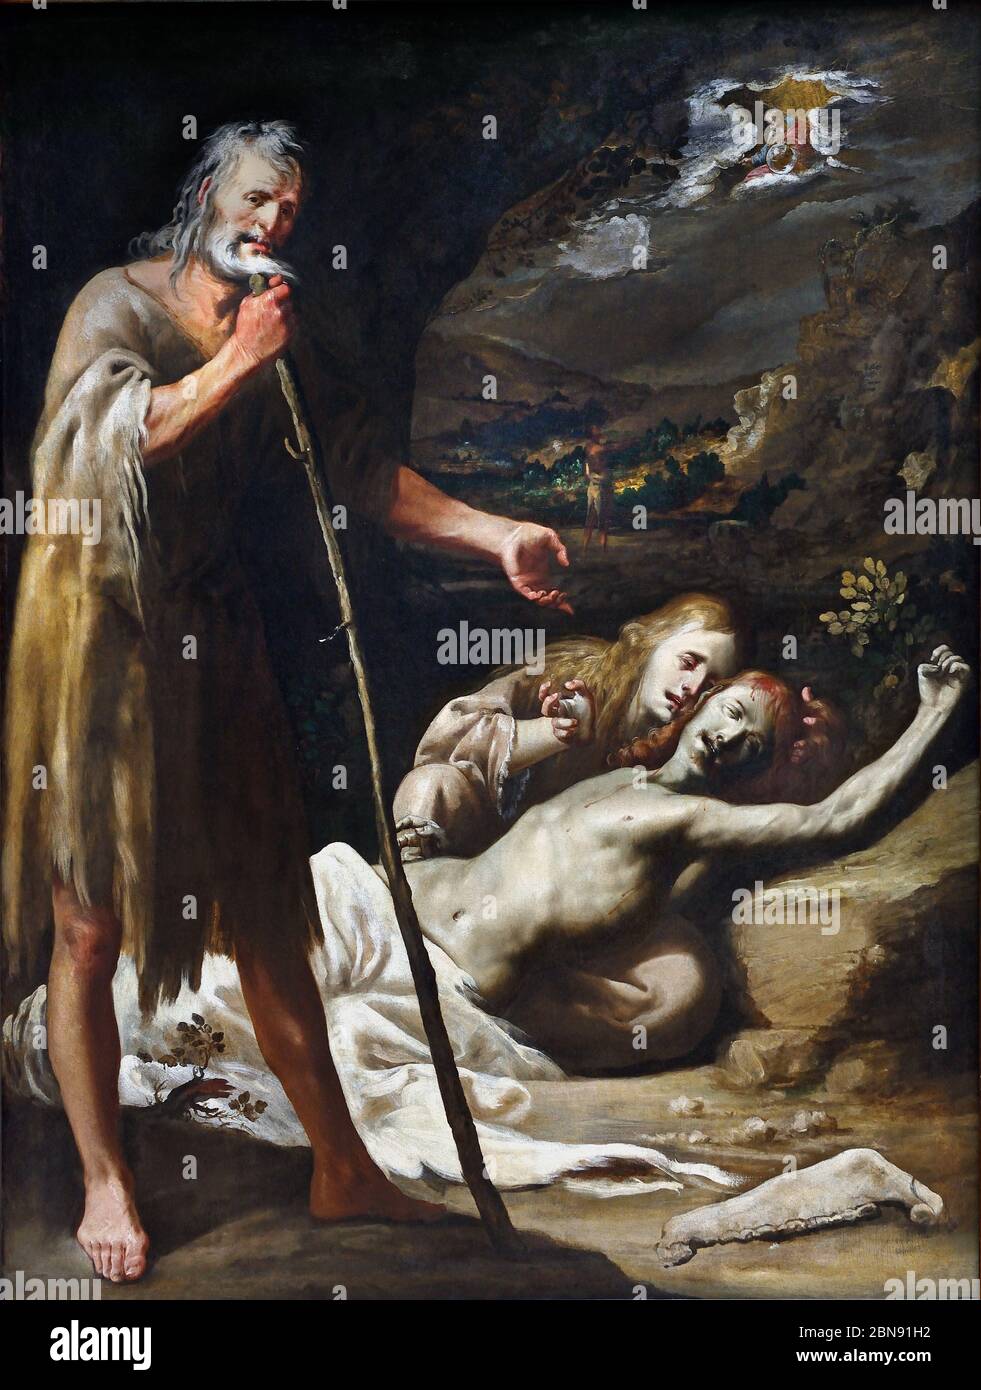 La mort d'Abel, autour de 1655 DOMEDEL Sebastian MARTINEZ (Jaén, environ 1615 - Madrid, 1667) l'Espagne, l'espagnol, ( Adam et Eve le corps d'Abel mort pleurer ) Banque D'Images